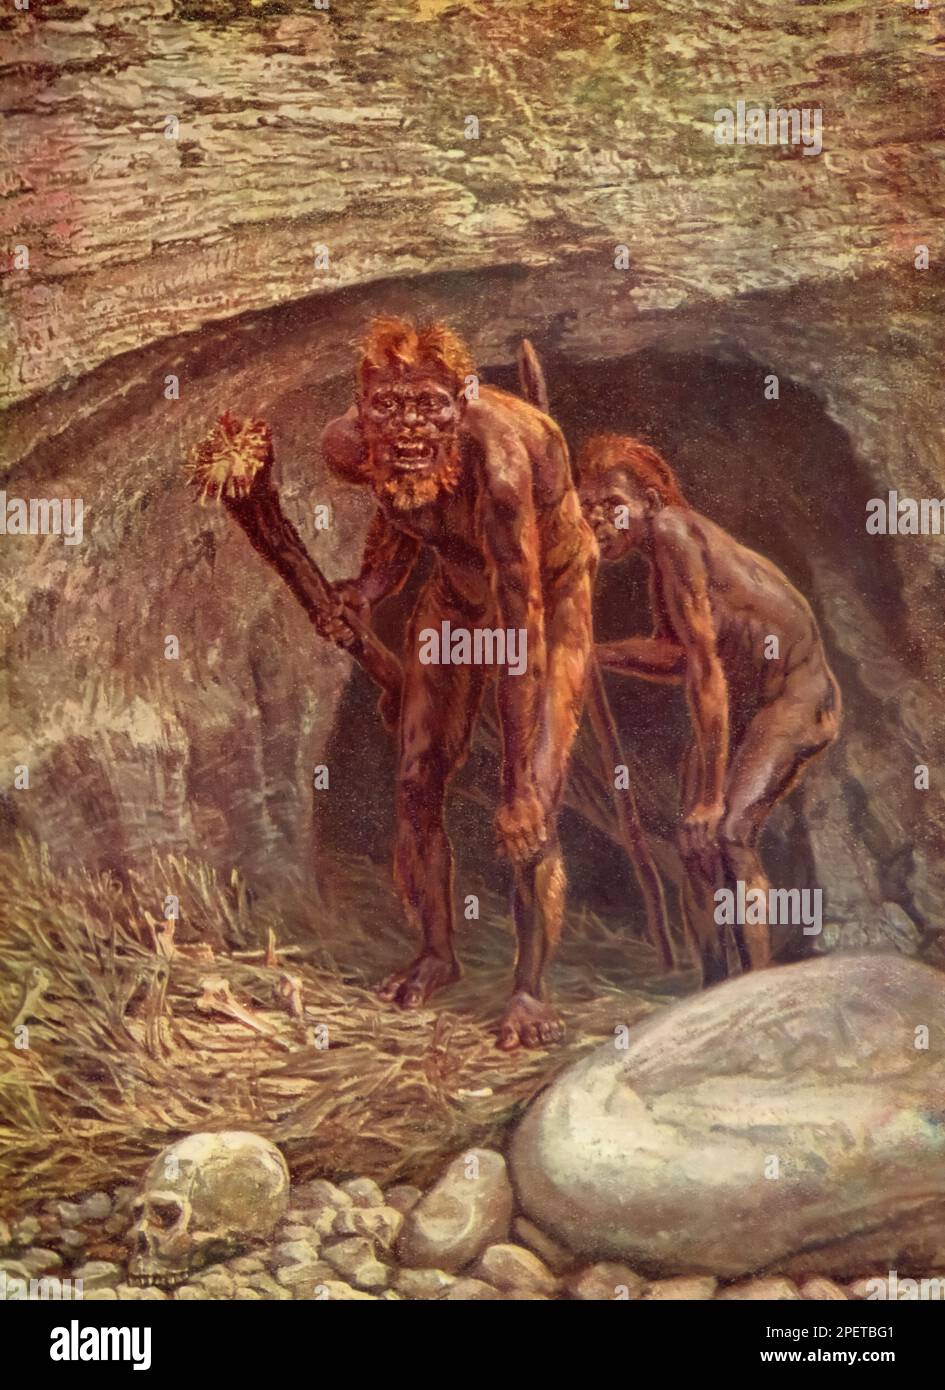 Ein früherer Vorfahre des Menschen, c1937. Einige prähistorische Menschen waren Höhlenbewohner, aber die meisten nicht. Solche frühen Höhlenbewohner und andere prähistorische Völker werden auch Höhlenmenschen genannt. Stockfoto